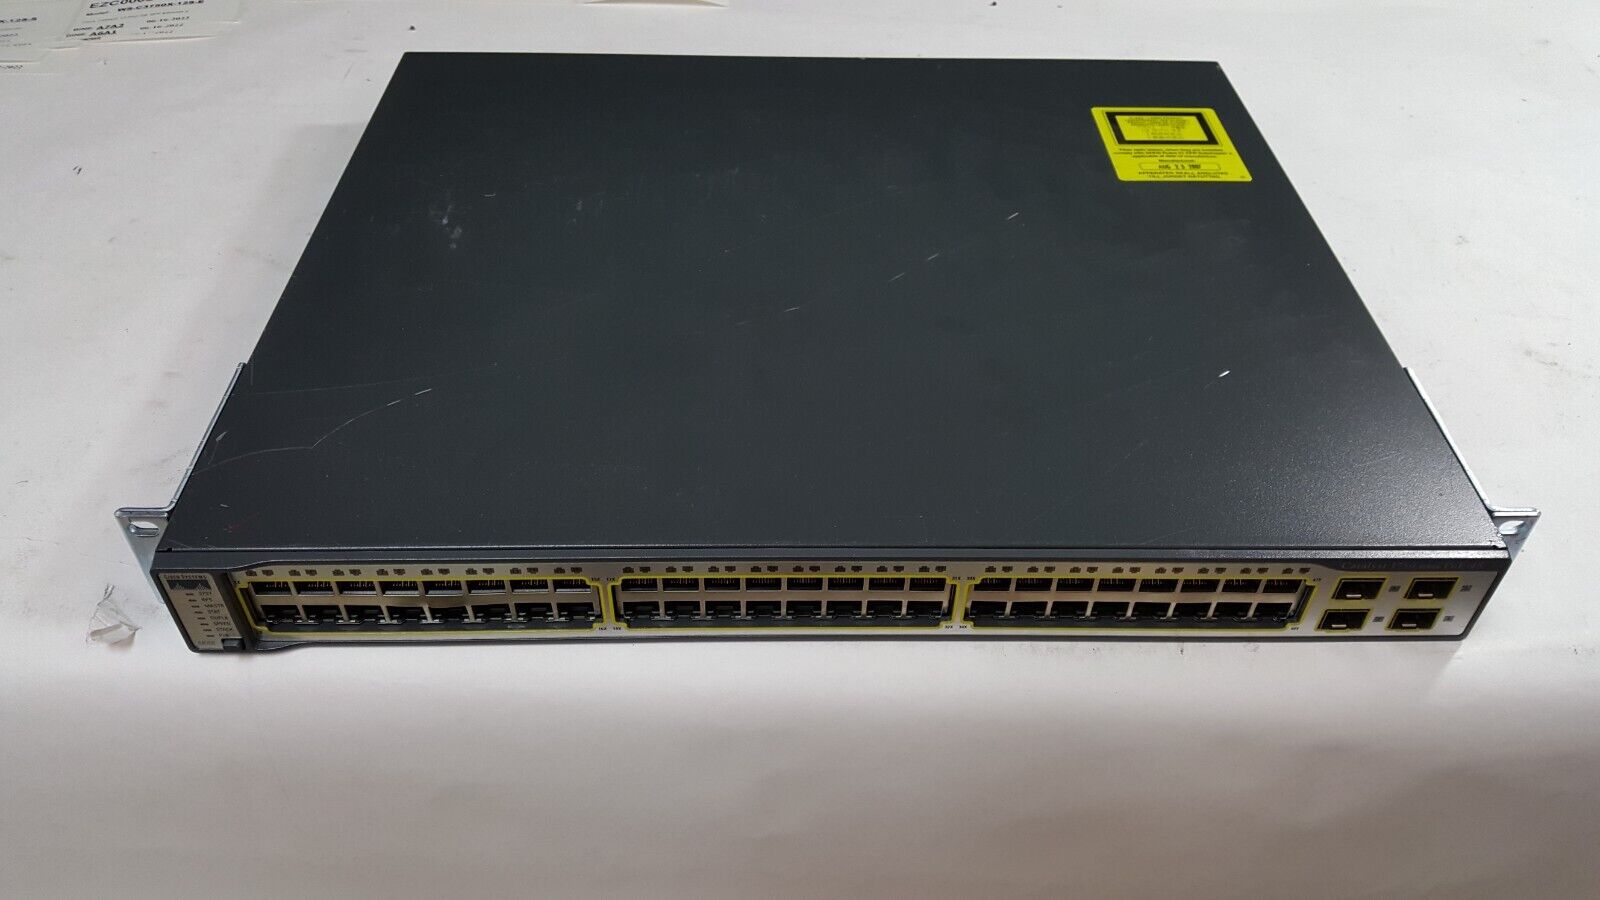 Cisco Cisco 3750 Series 48 Port WS-C3750-48PS-S  PoE Switch 